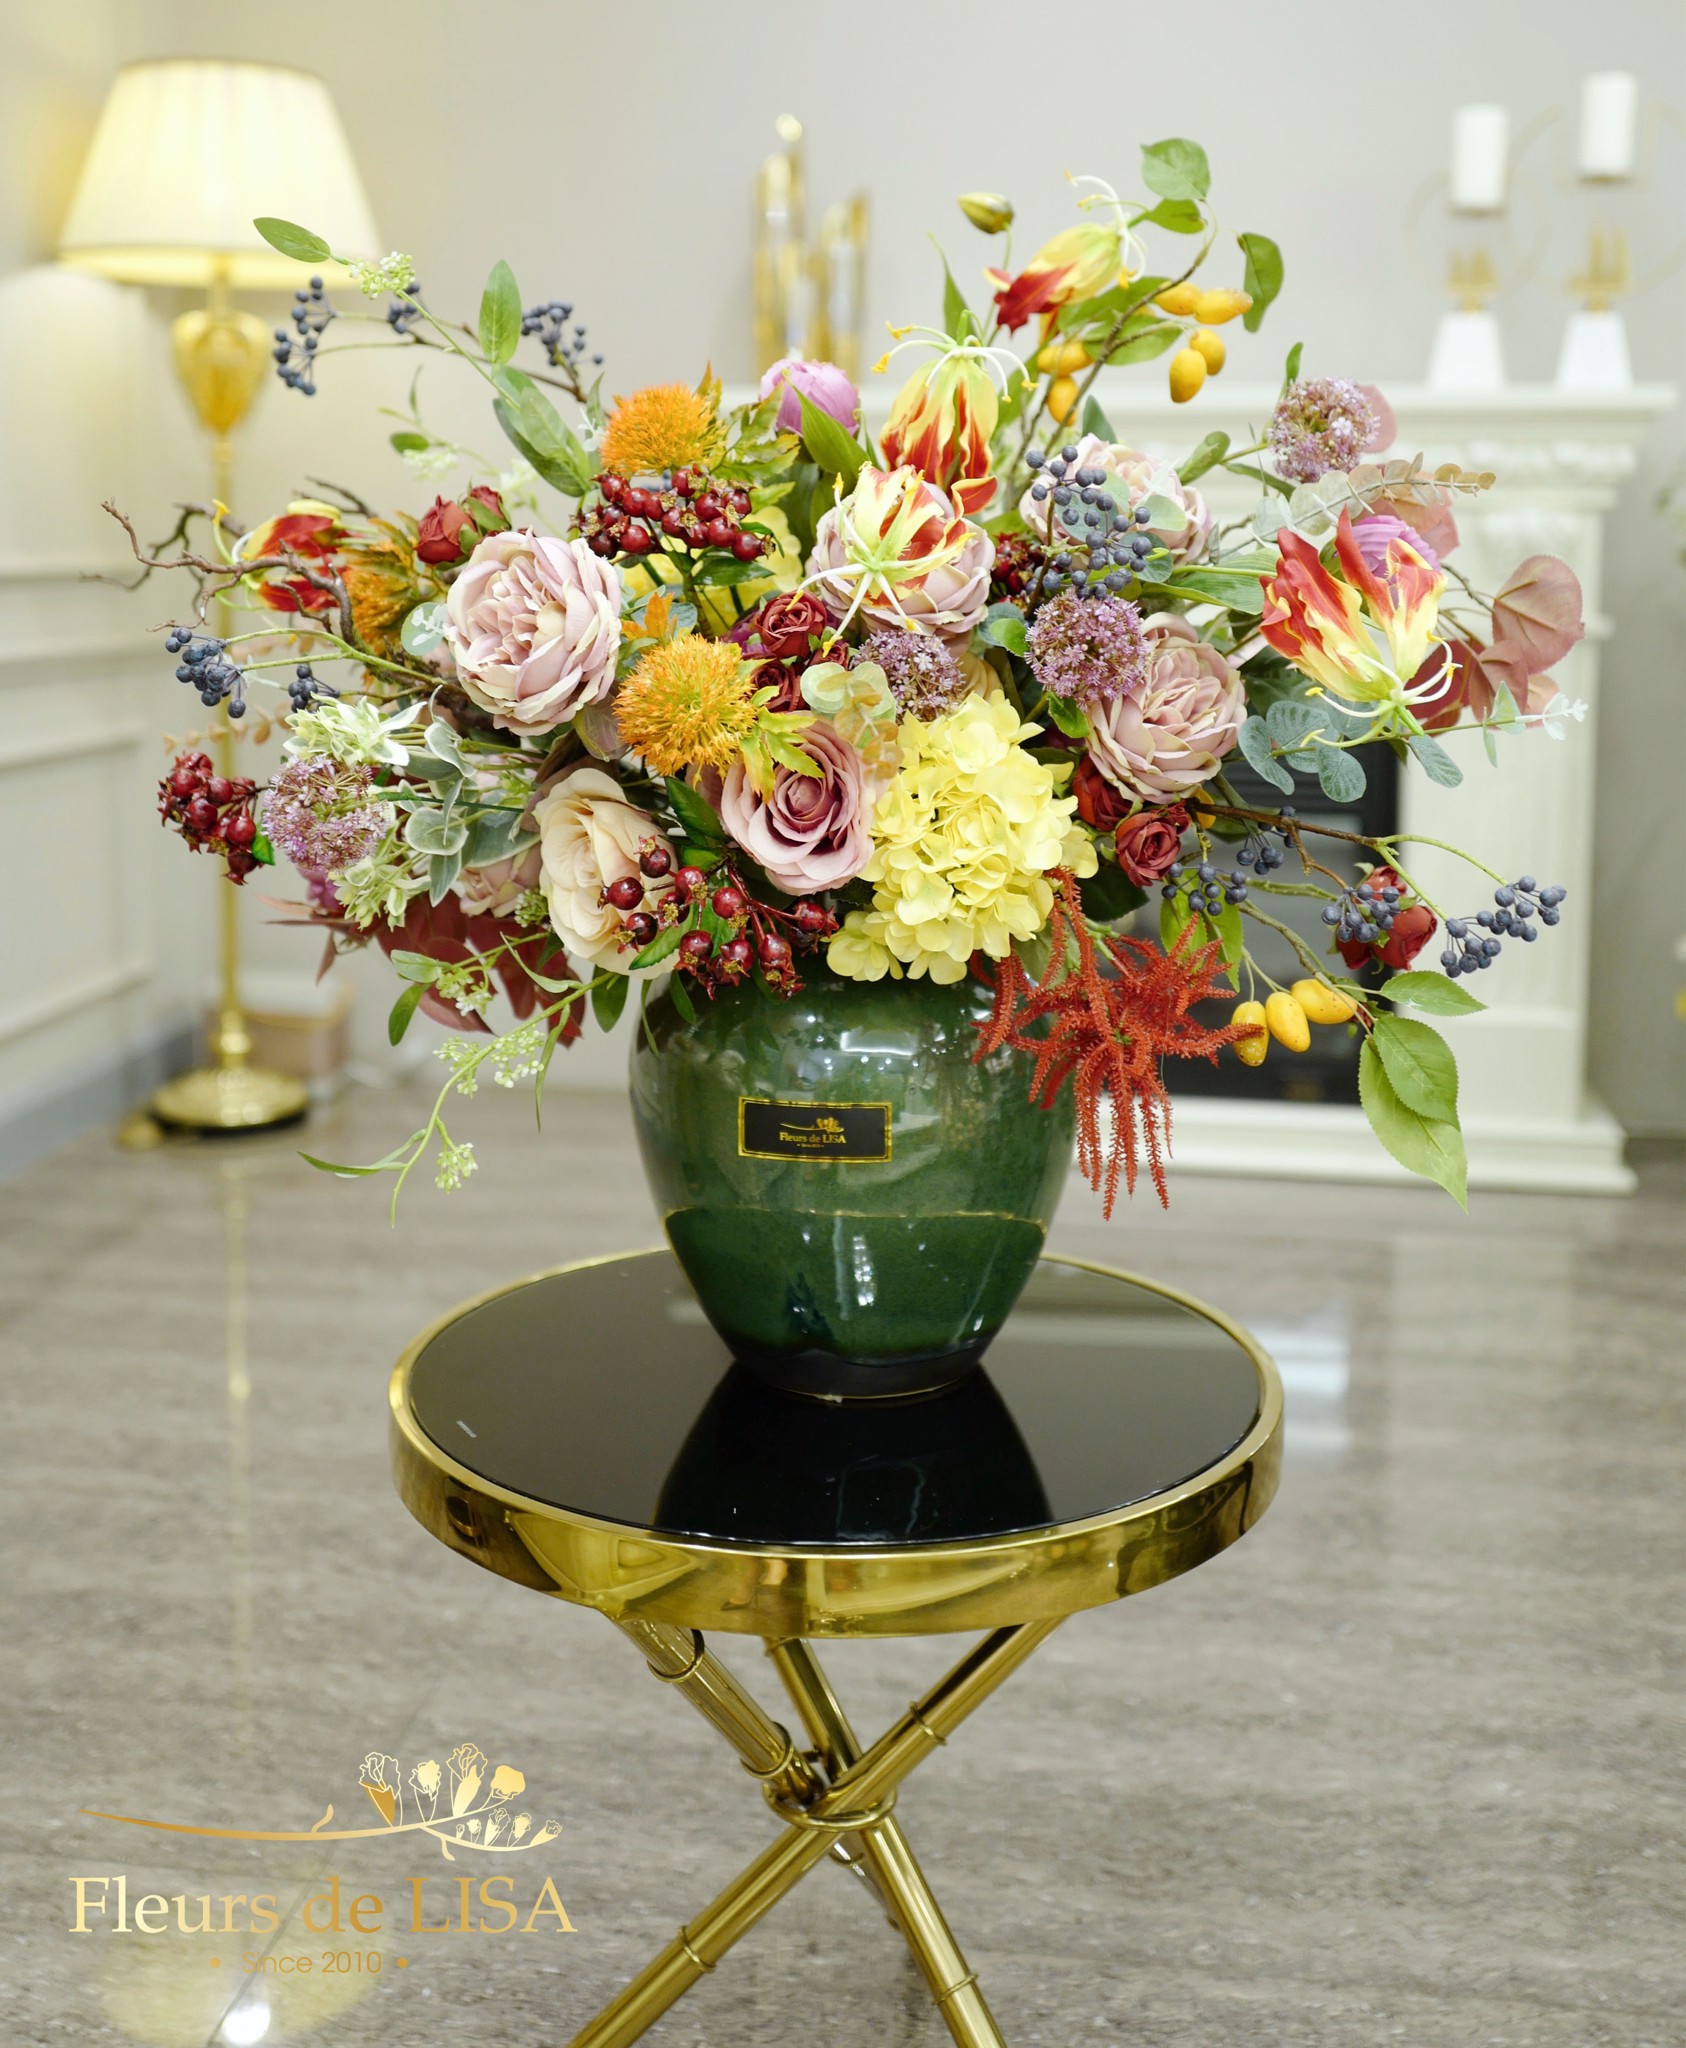  Amitié - Bình hoa lụa trang trí nội thất 